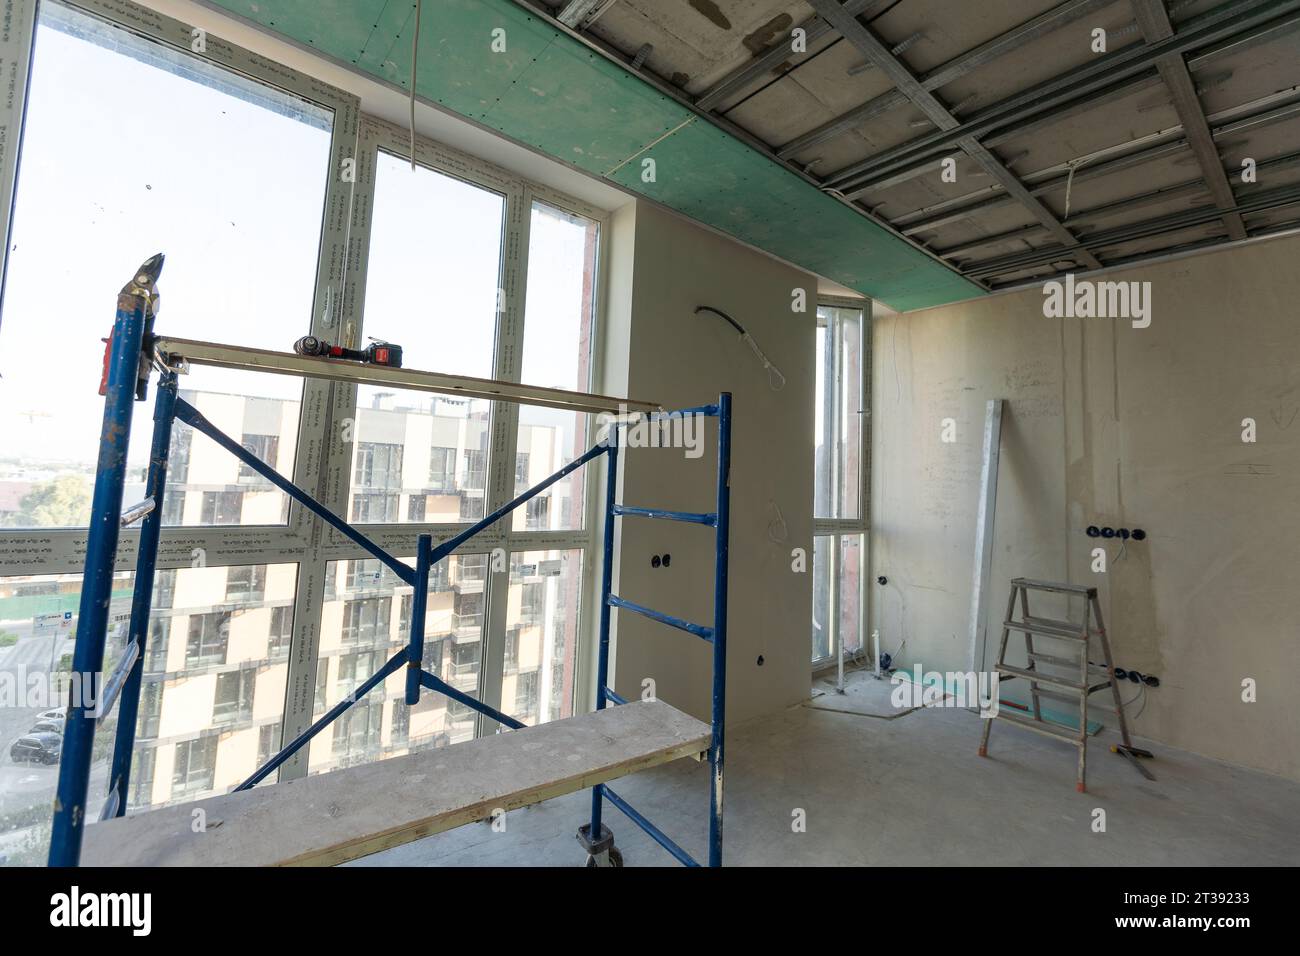 Le cadre métallique du plafond, isolation phonique, en cours de réparation d'un appartement Banque D'Images